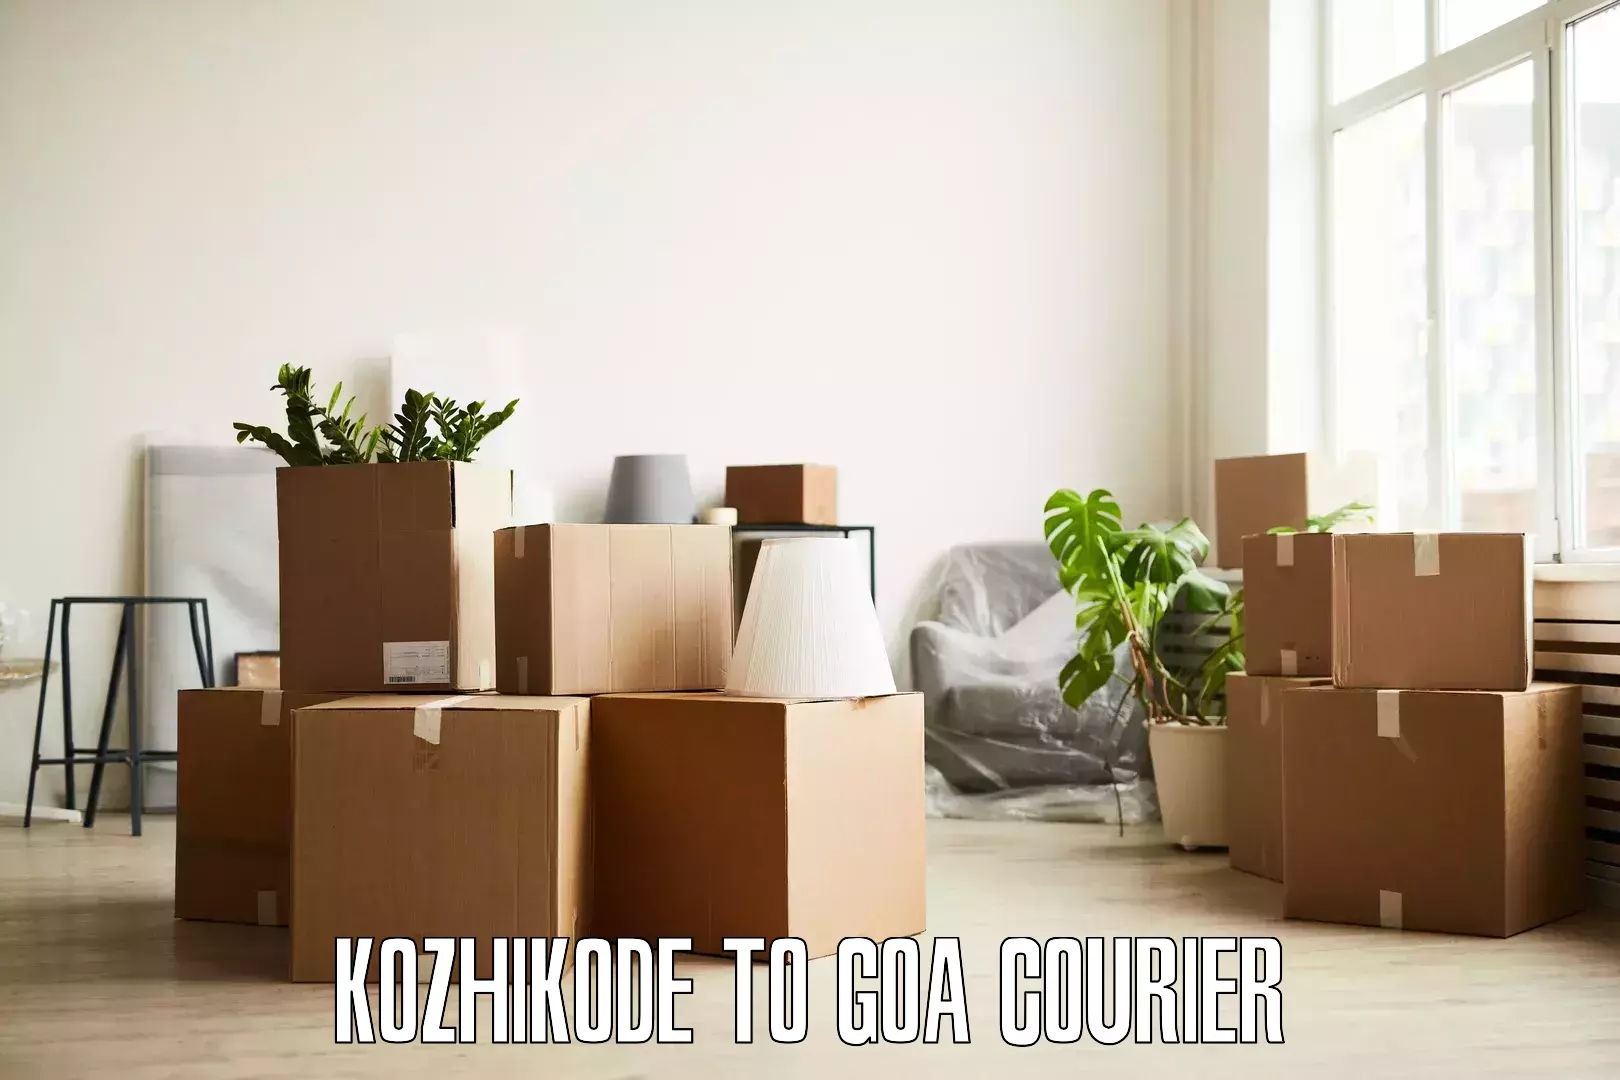 Professional furniture moving Kozhikode to Canacona